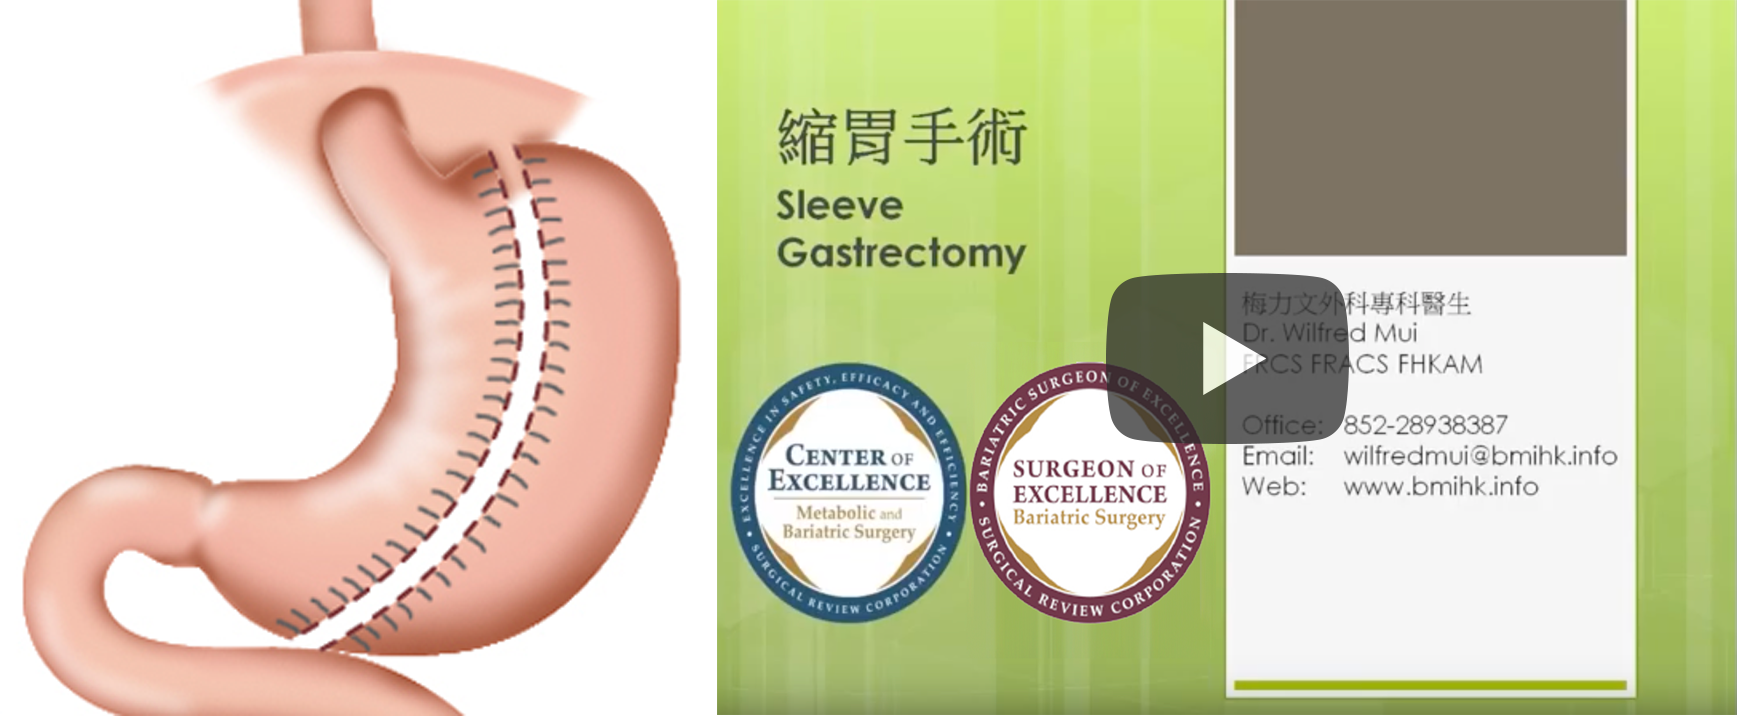 缩胃手术 Sleeve Gastrectomy